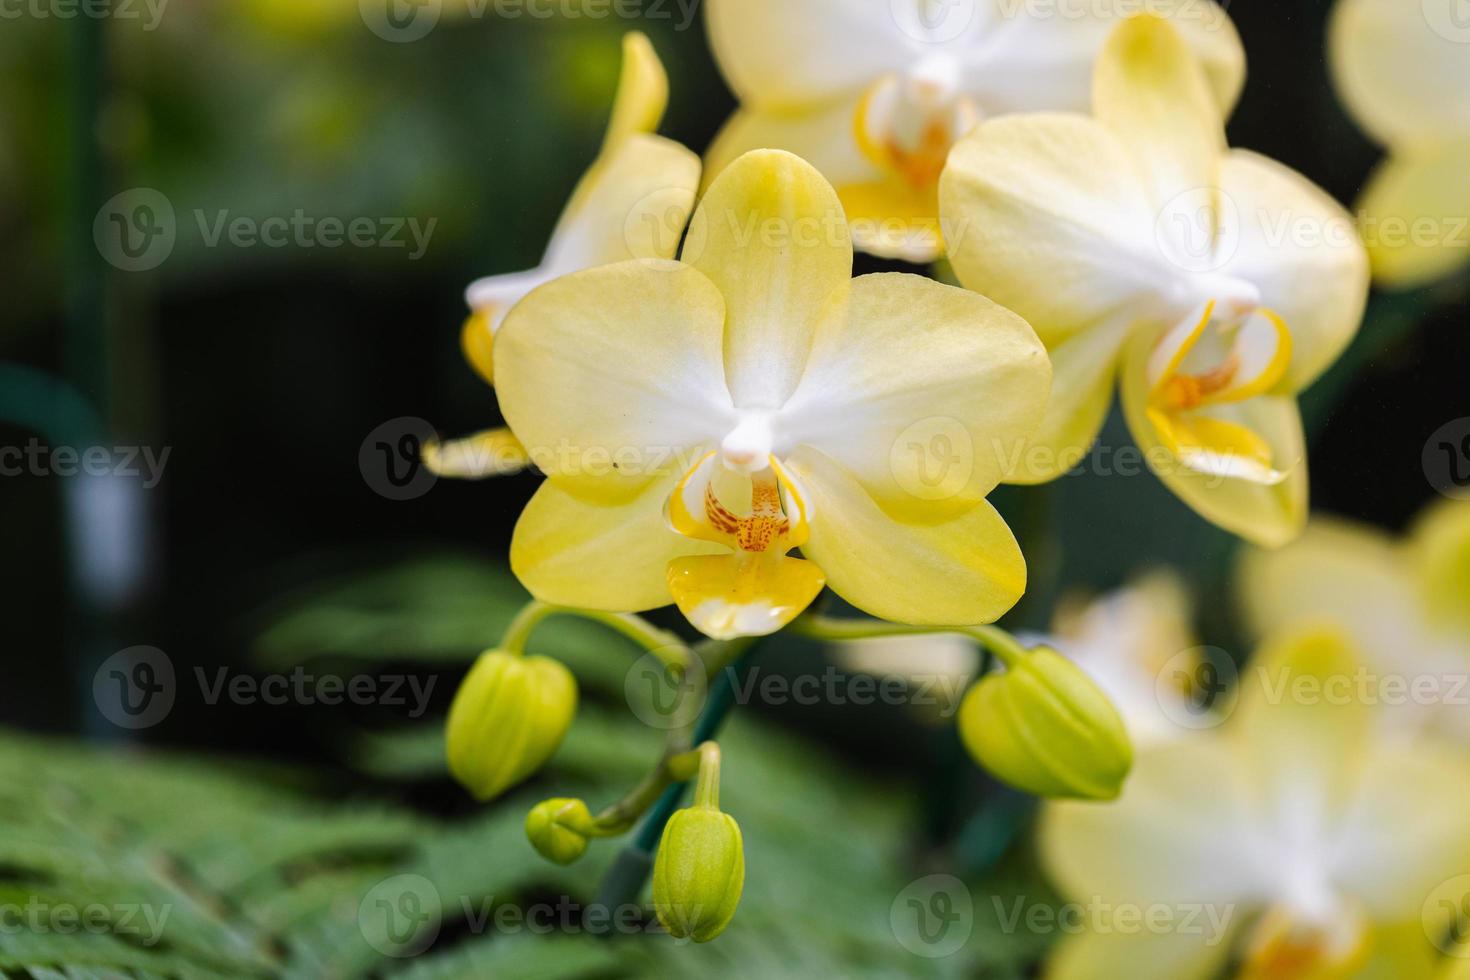 skön orkide blomma blomning på regnig säsong. phanalenopsis orkide foto